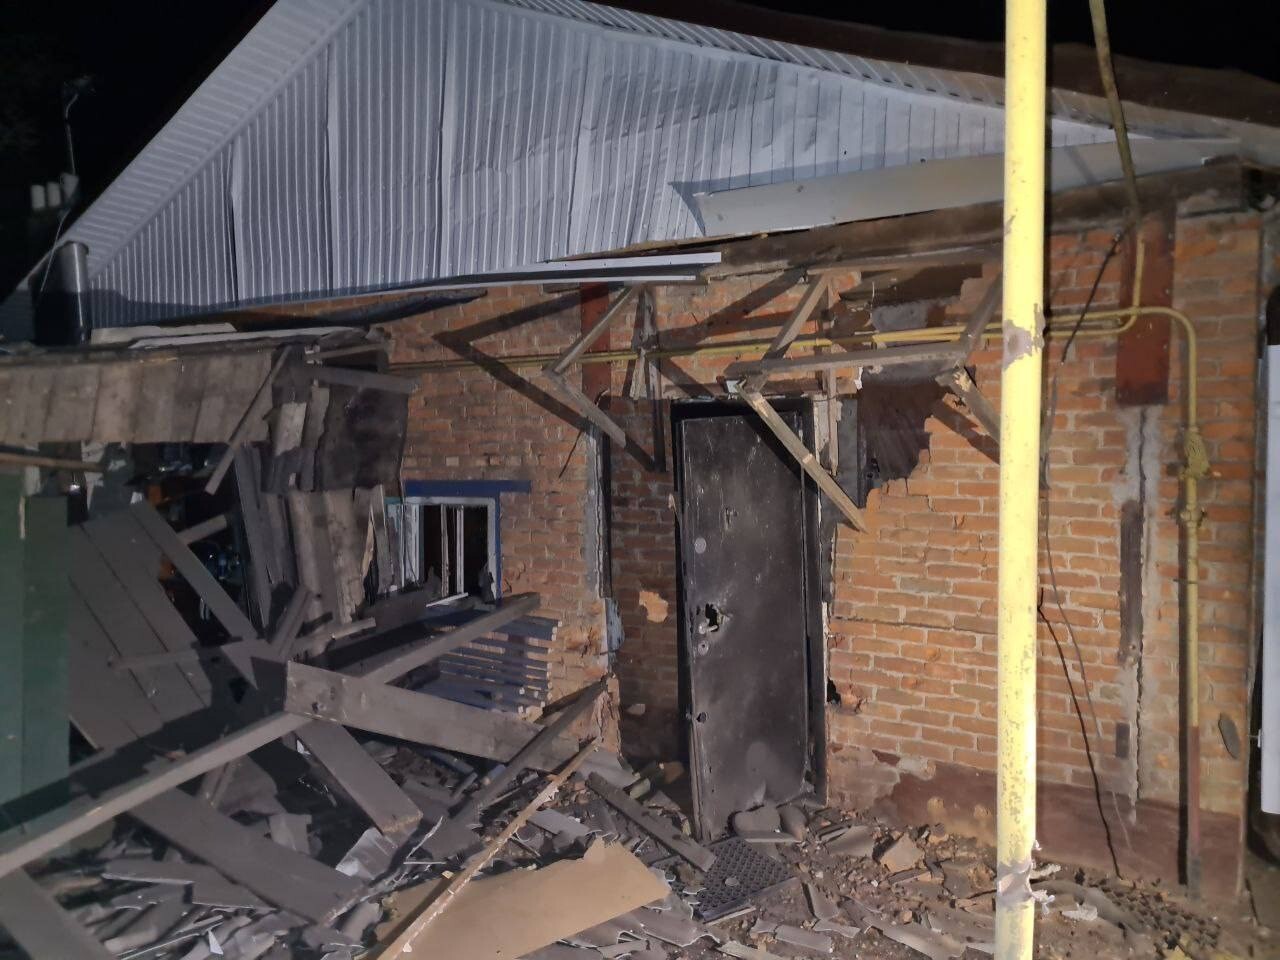 Артиллерийский снаряд ВСУ упал во дворе частного дома в белгородском селе Муром, пострадавших нет - губернатор